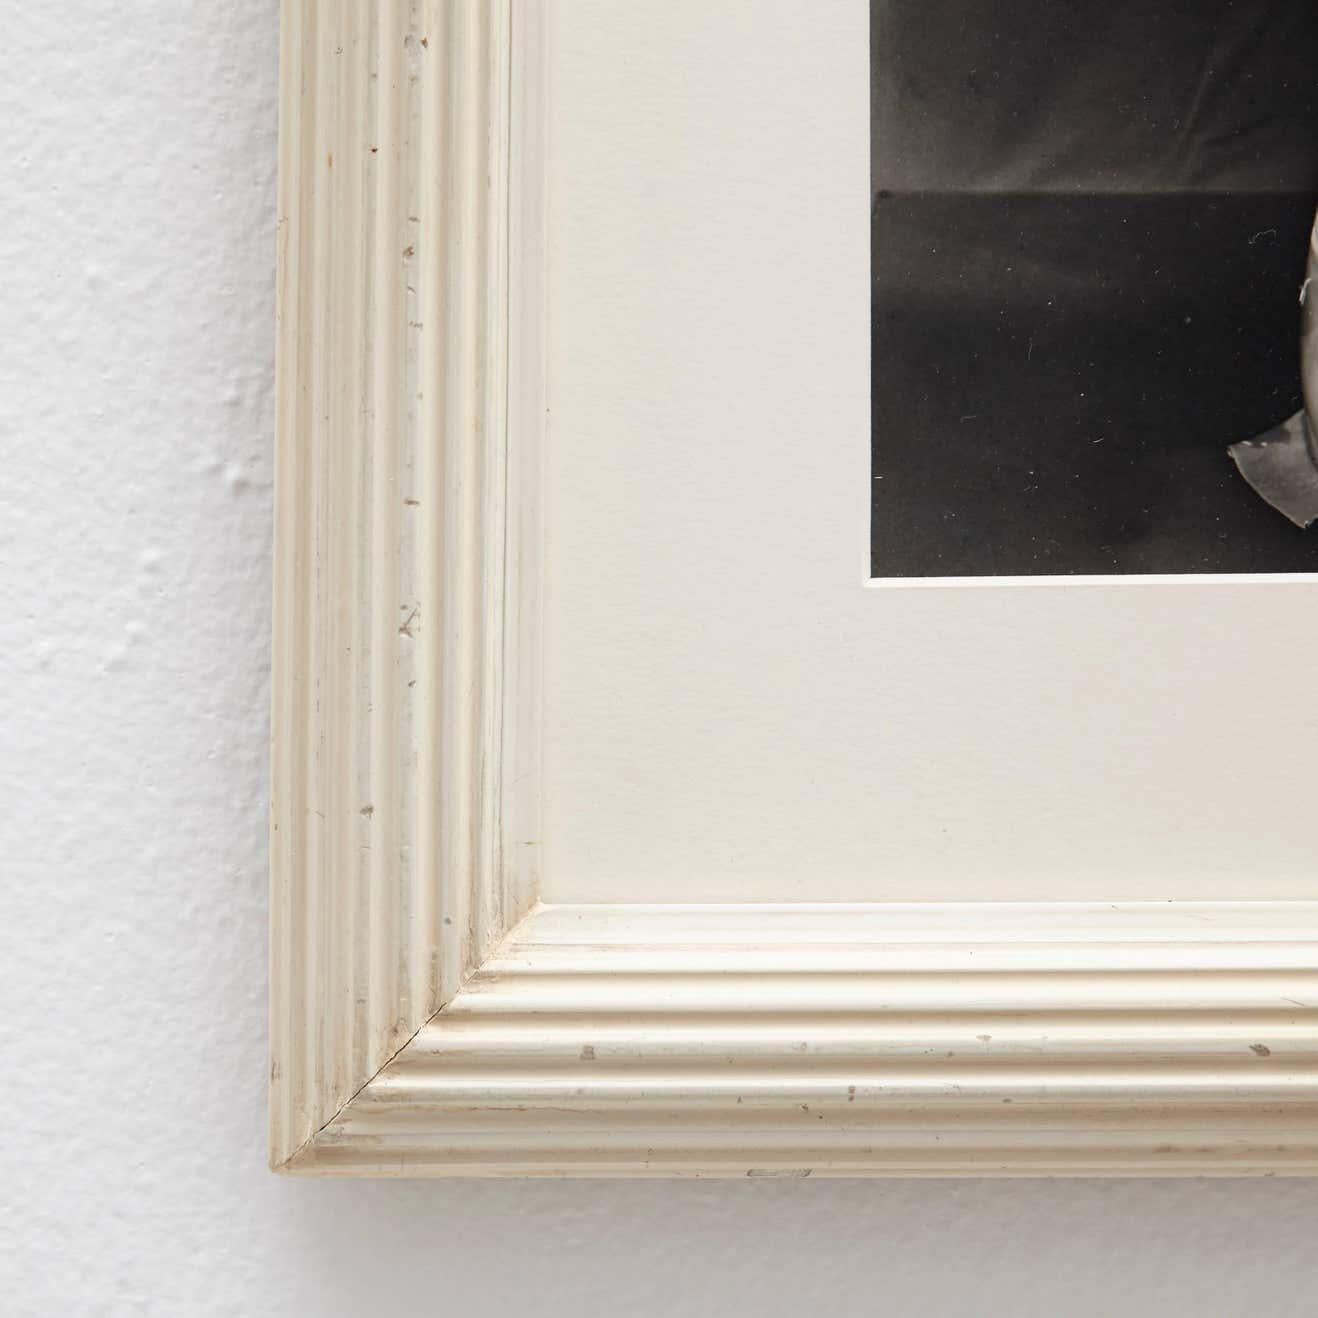 Photographie de Man Ray, vers 1930.

Un tirage posthume à partir du négatif original en 1977 par Pierre Gassmann.

Gélatine argentique au bromure, encadrée dans un cadre du 19e siècle avec verre de musée.

Man Ray (1890-1976) est un artiste